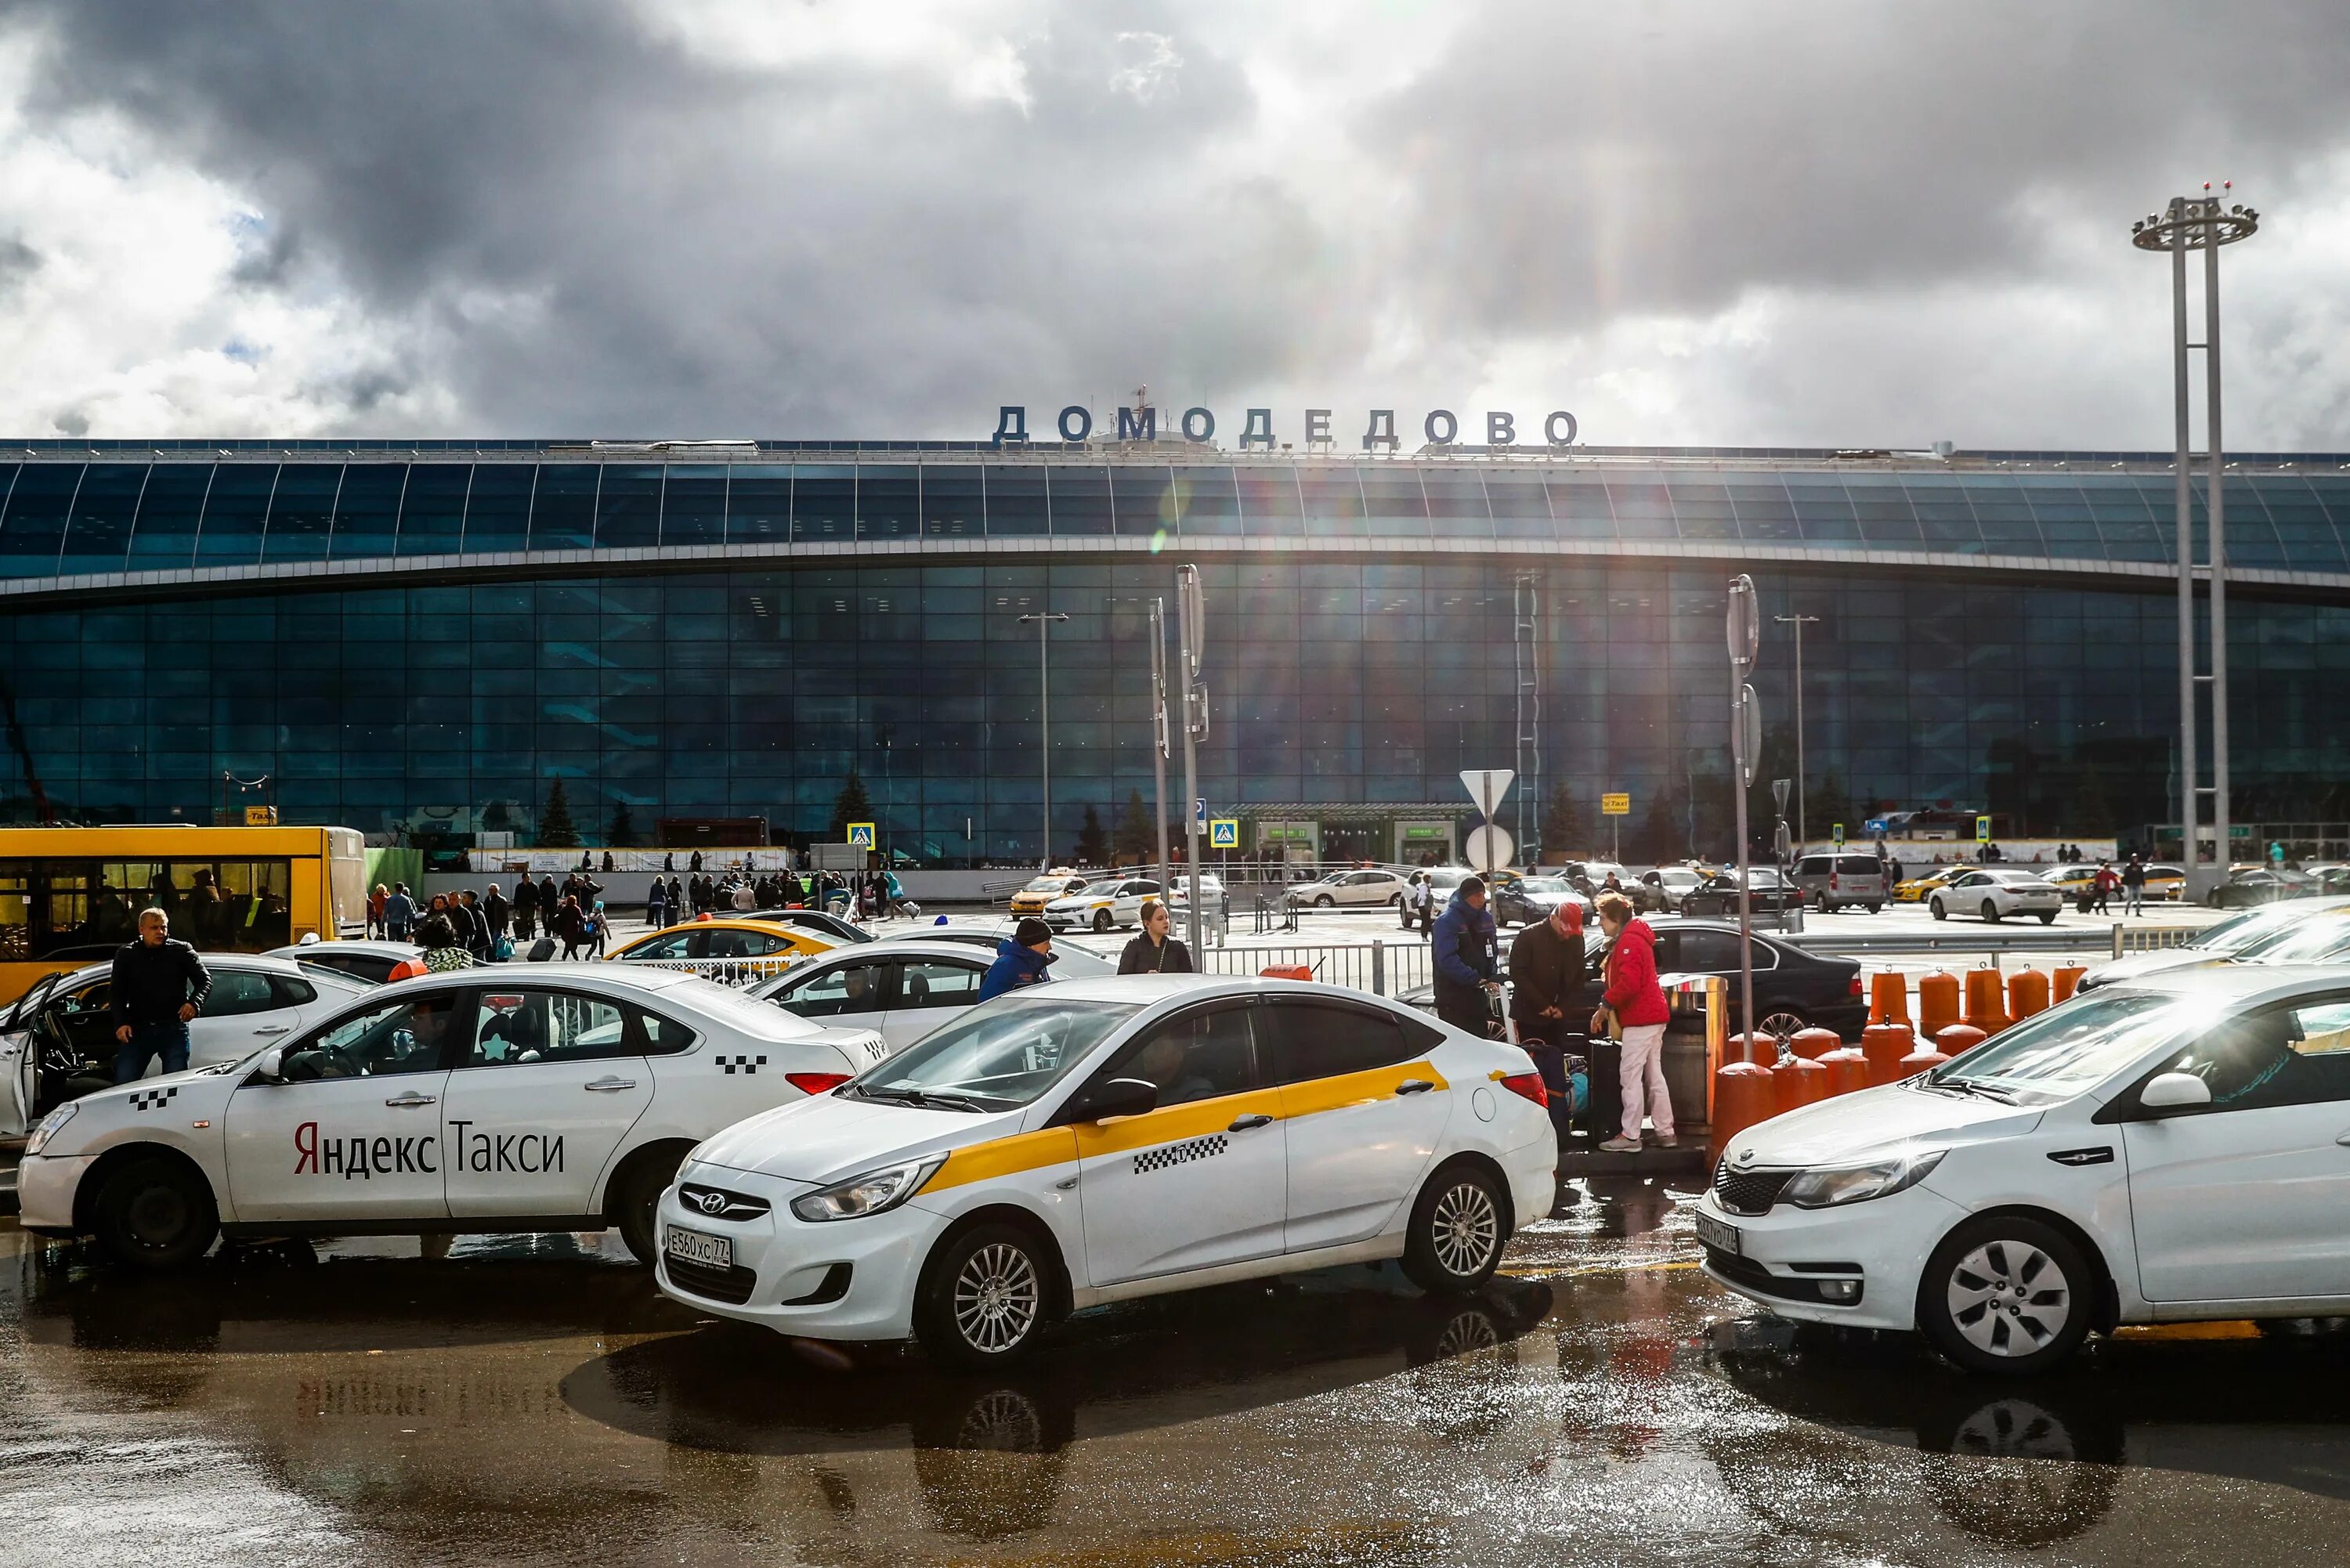 Аэропорт Домодедово такси. Такси в аэропорт.